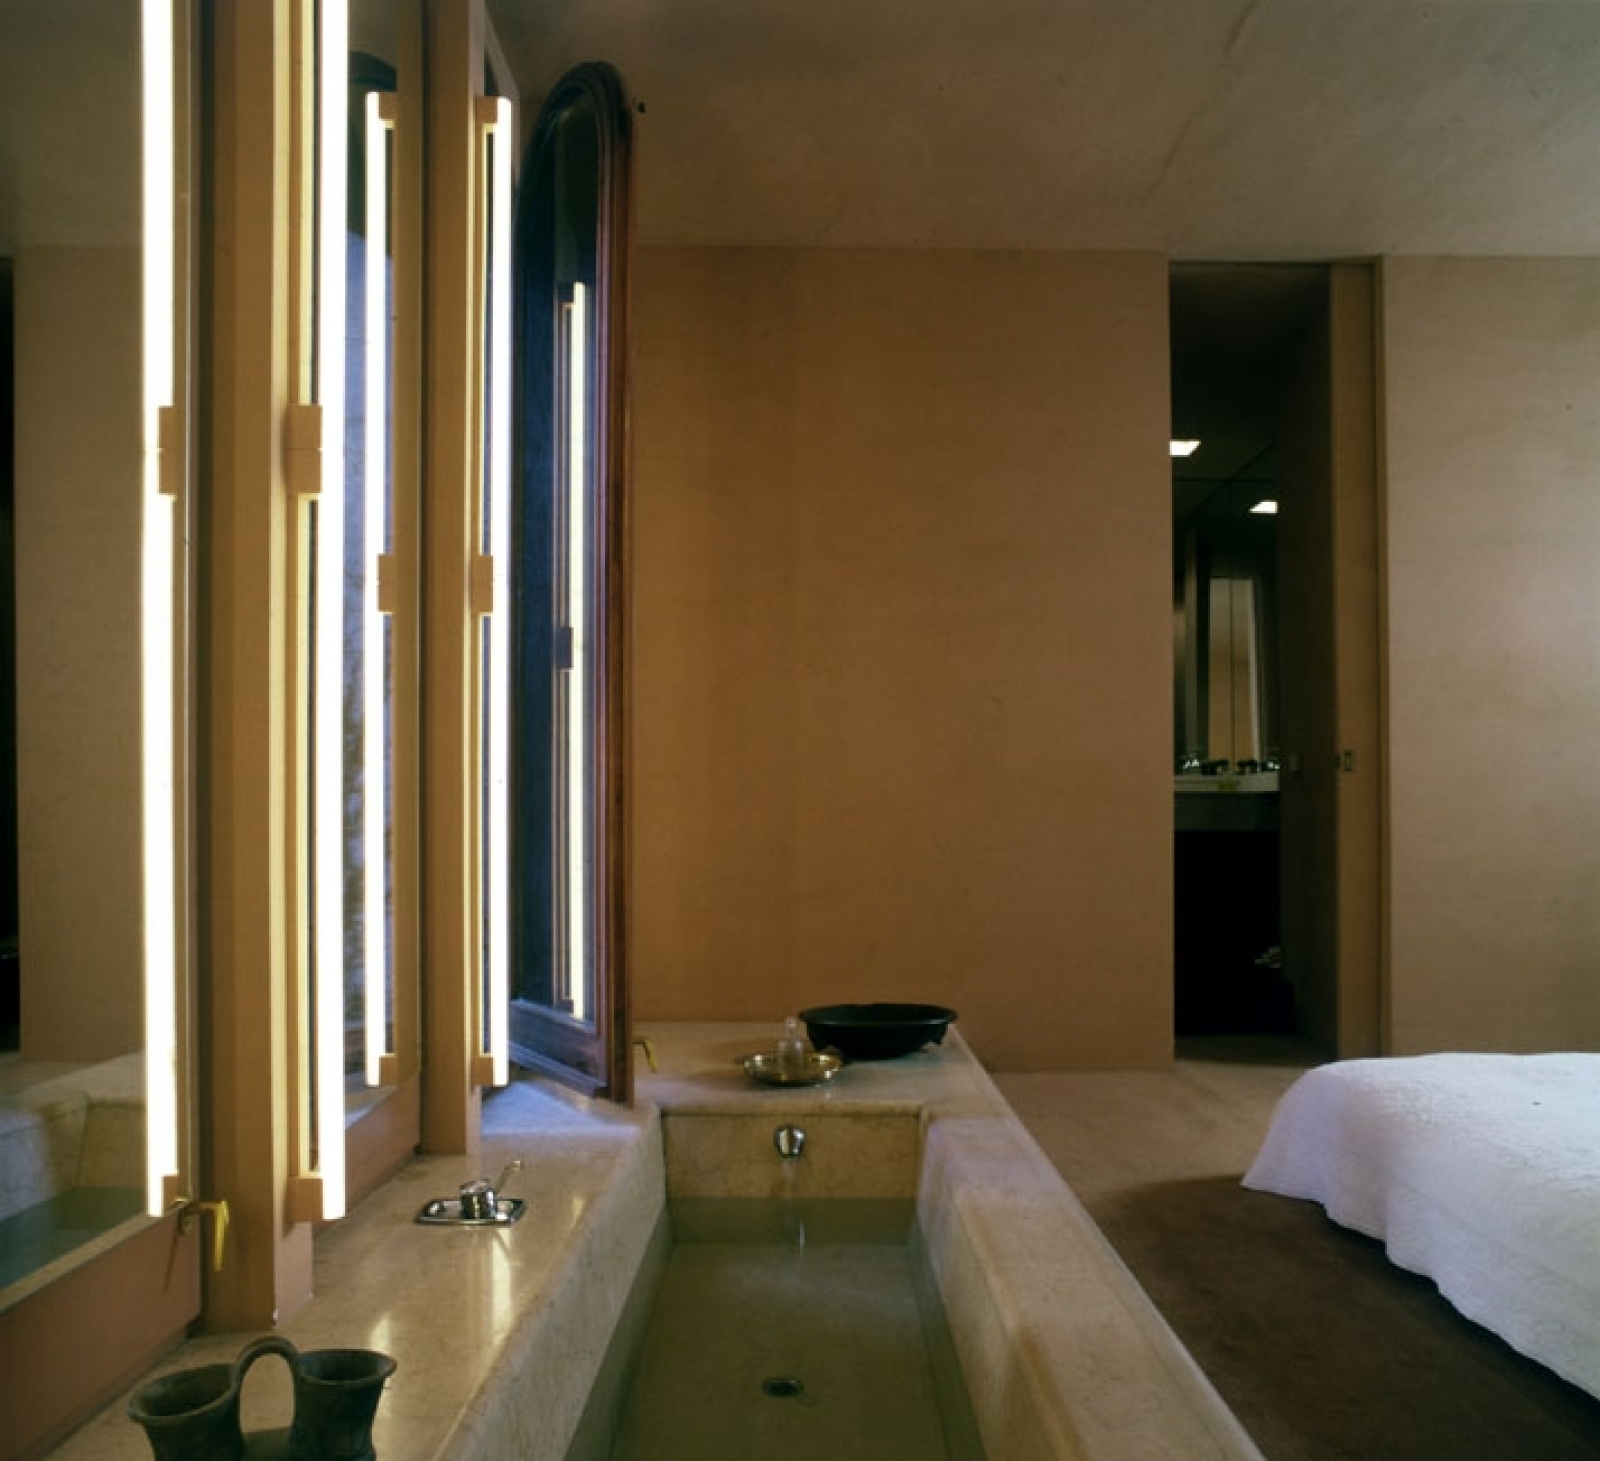 Дизайн интерьера ванной комнаты от Ricardo Bofill